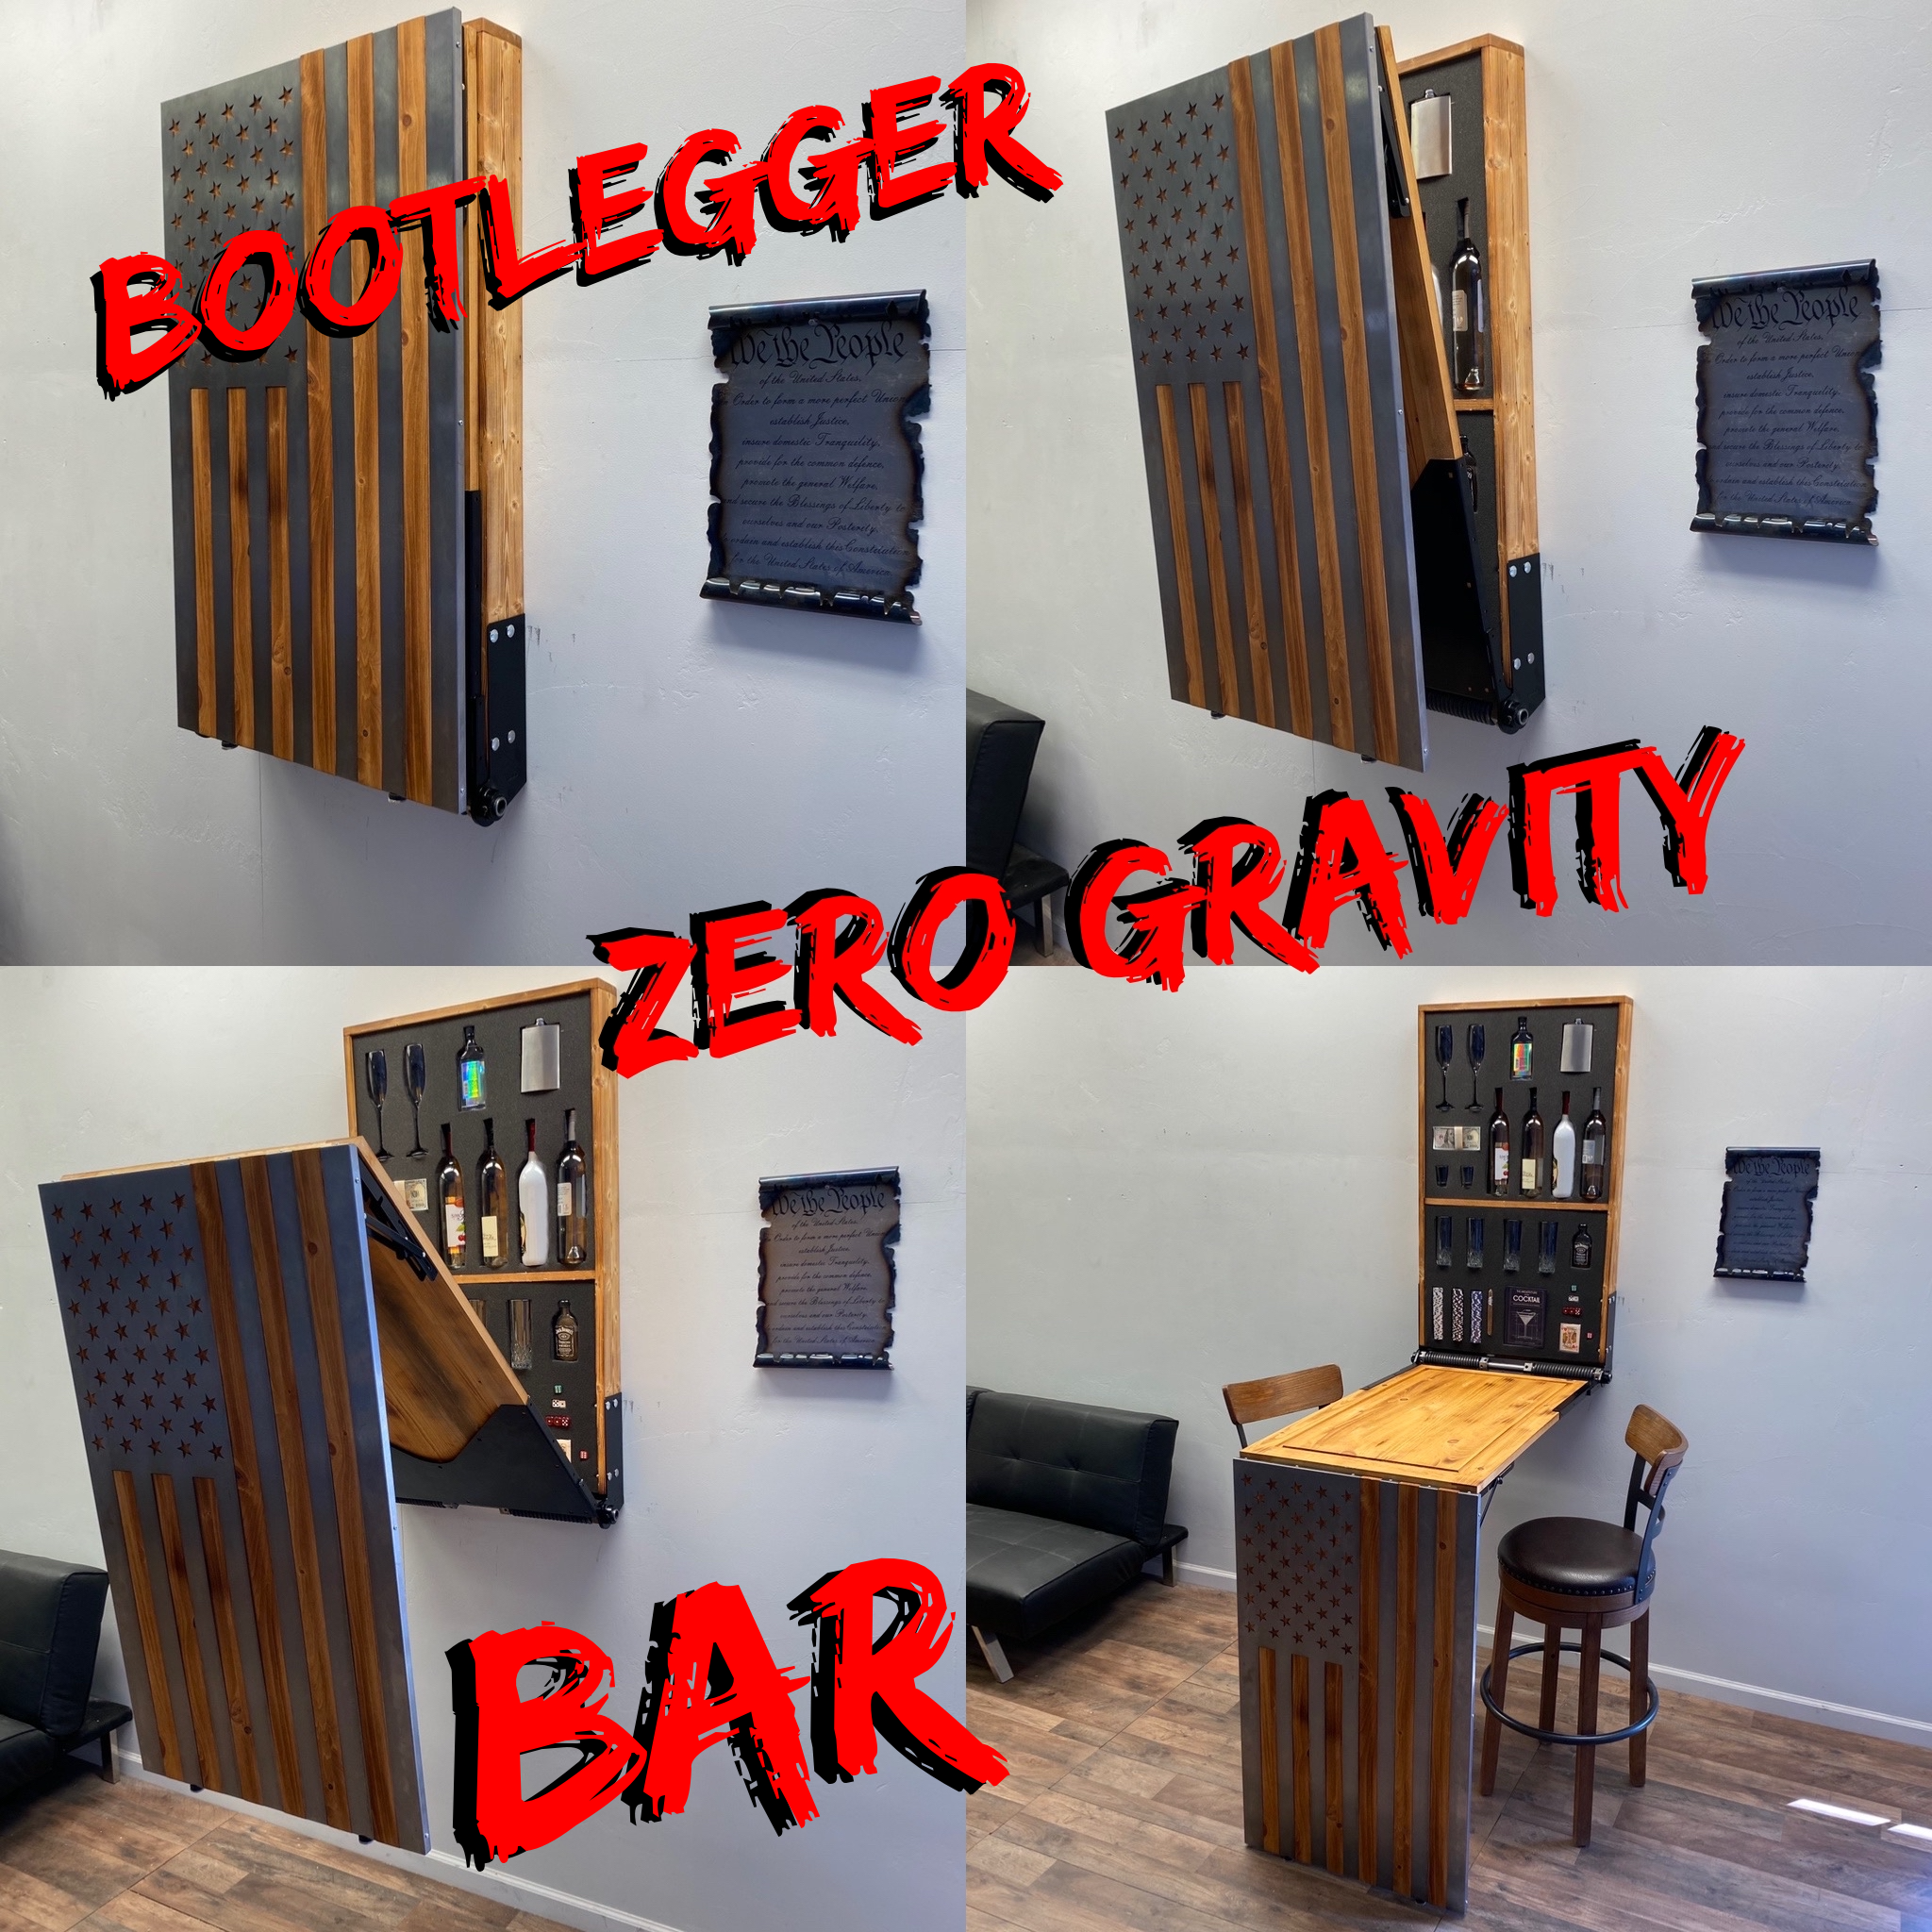 Zero Gravity “BOOTLEGGER” HIDE-A-BAR